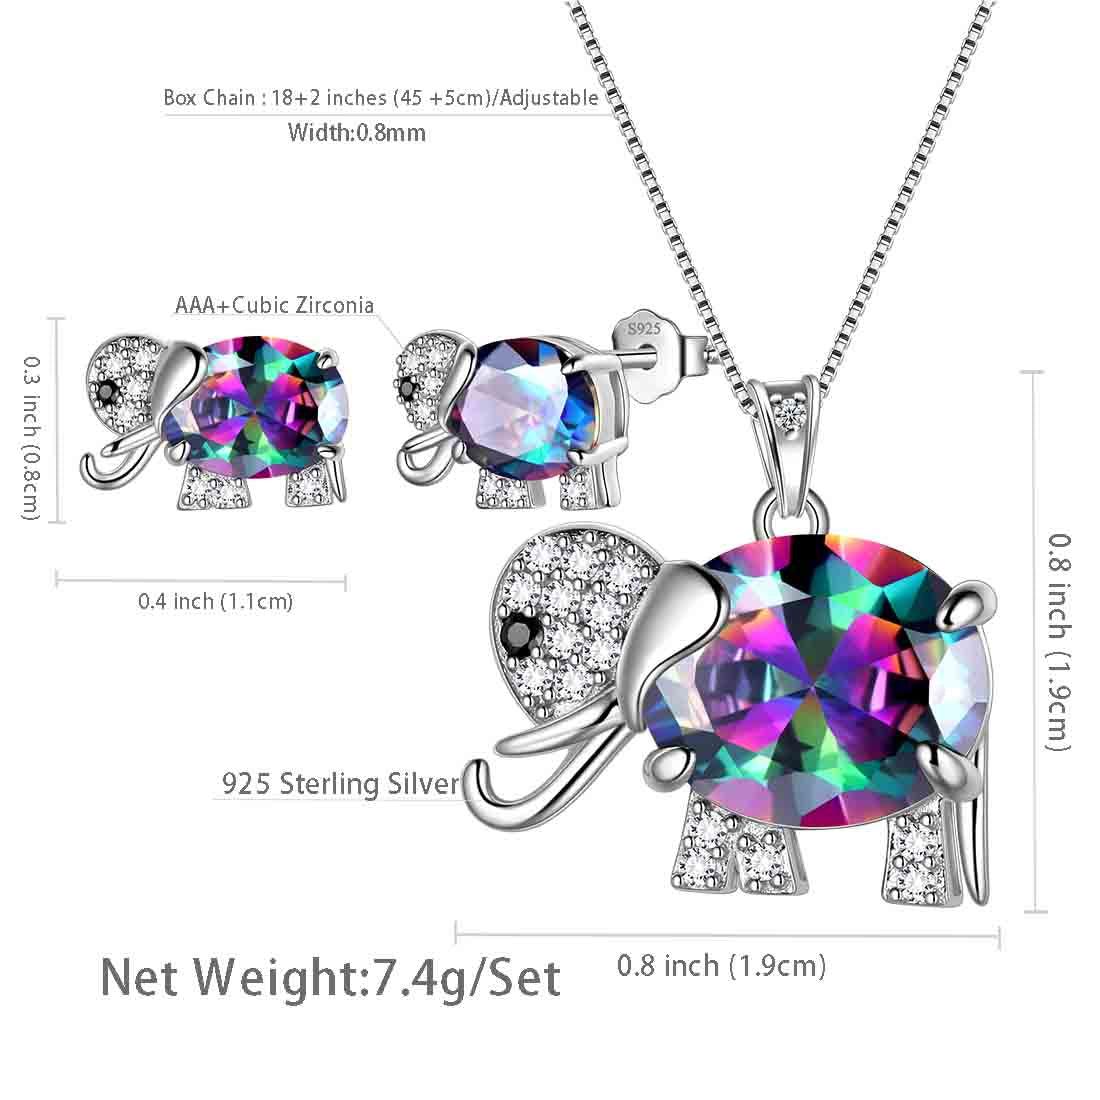 Elephant Mystic Rainbow Topaz Jewelry Set 3PCS - Jewelry Set - Aurora Tears